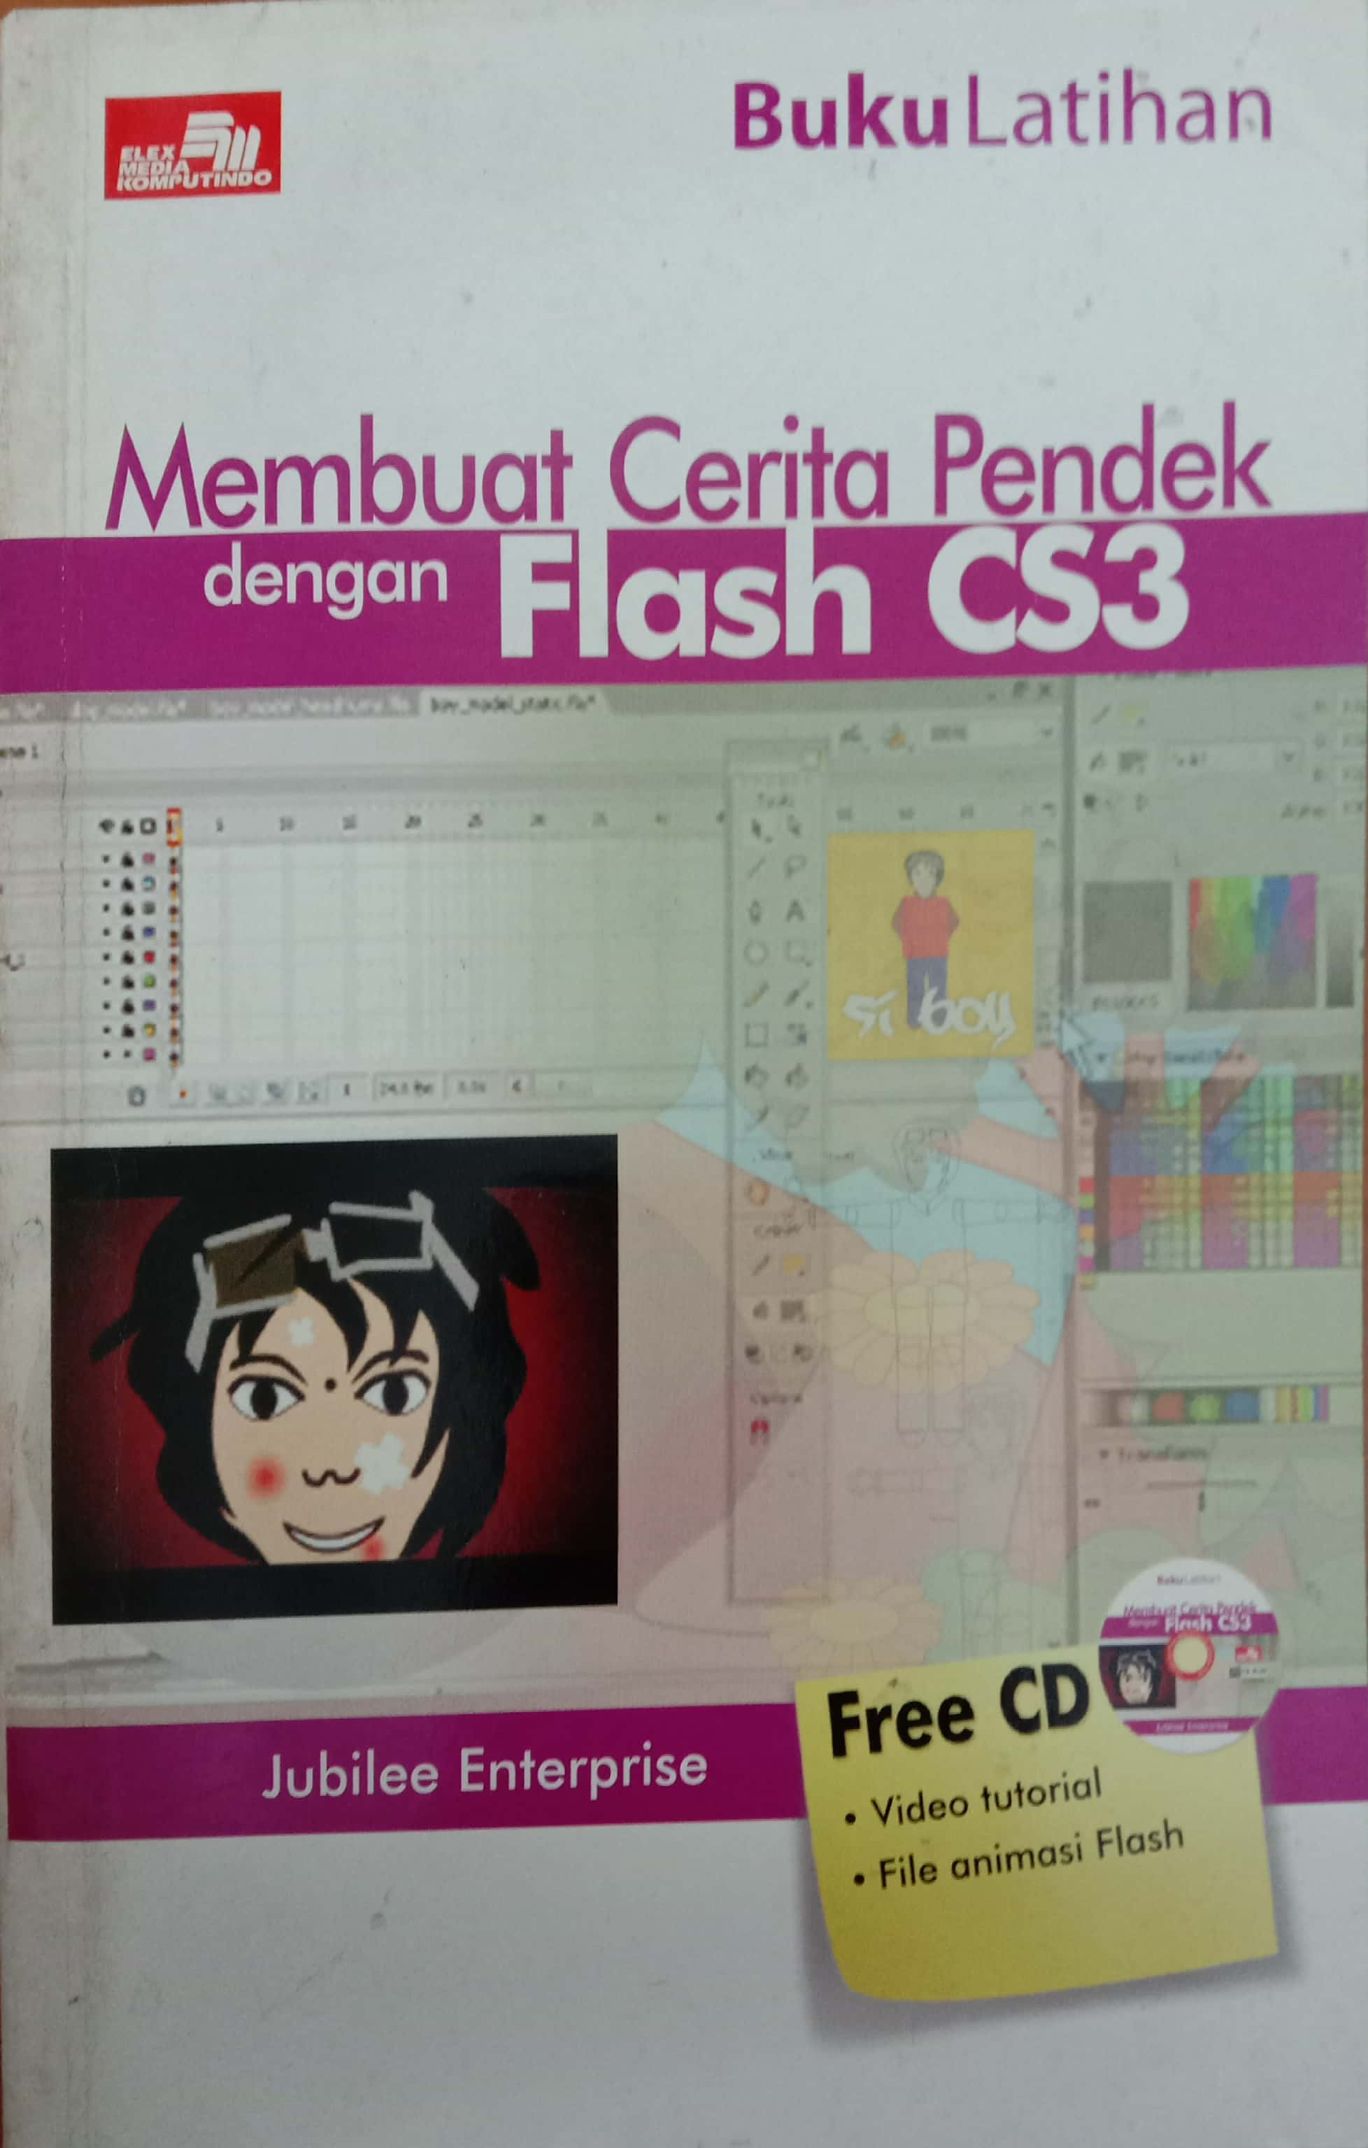 Buku Latihan Membuat Cerita Pendek Dengan Flash CS3